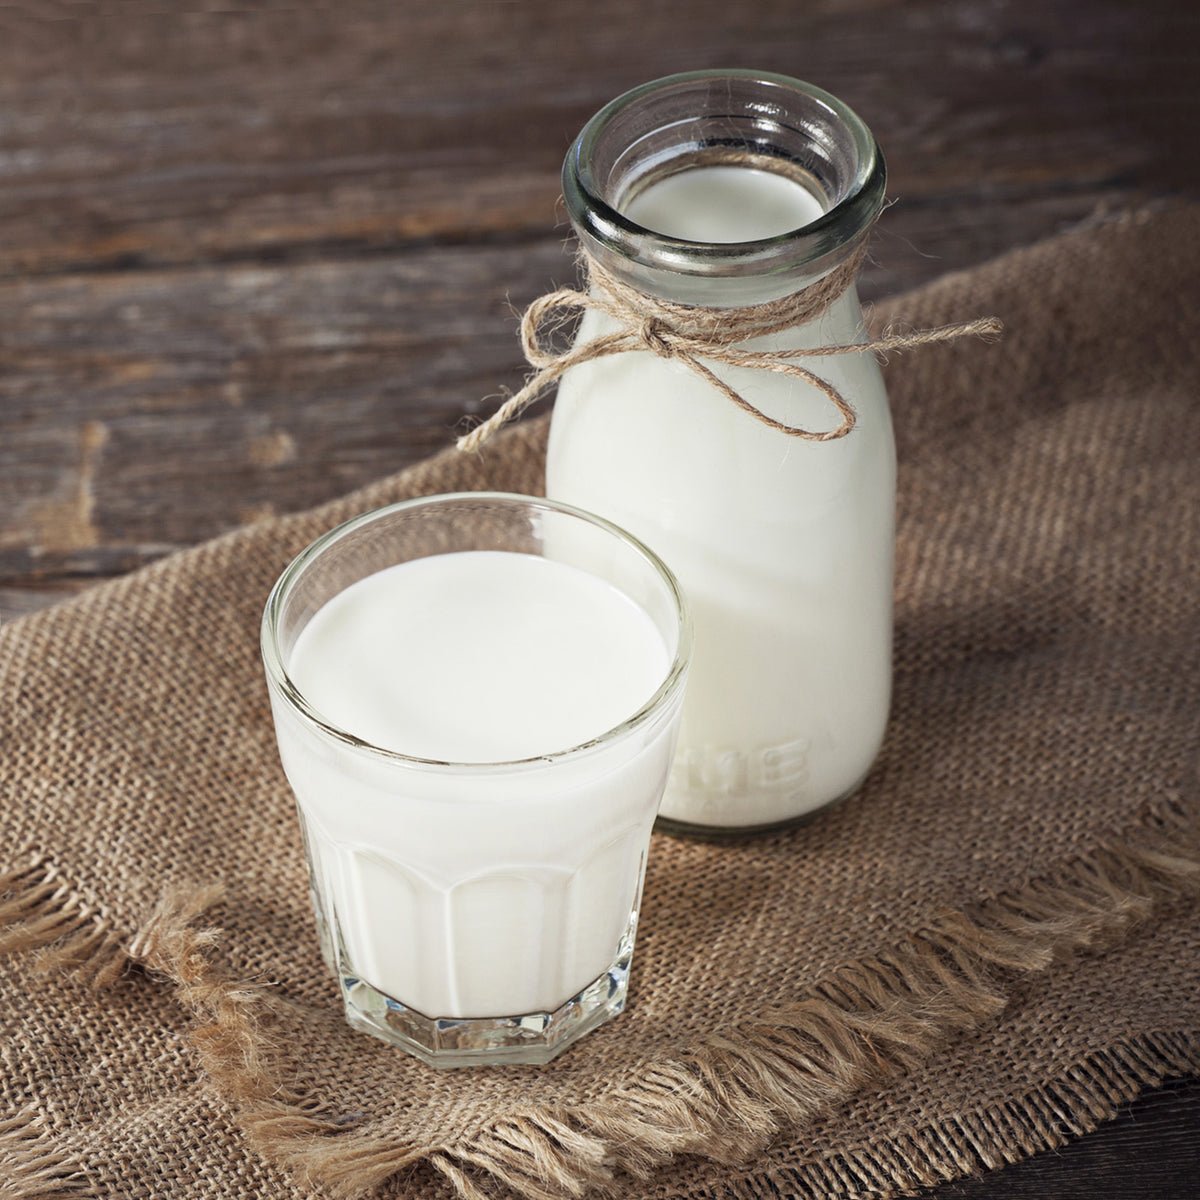 有機 オーガニック グラスフェッド ミルク パウダー 全粉乳 オーストラリア産 (500g=5L分) ホライズンファームズ